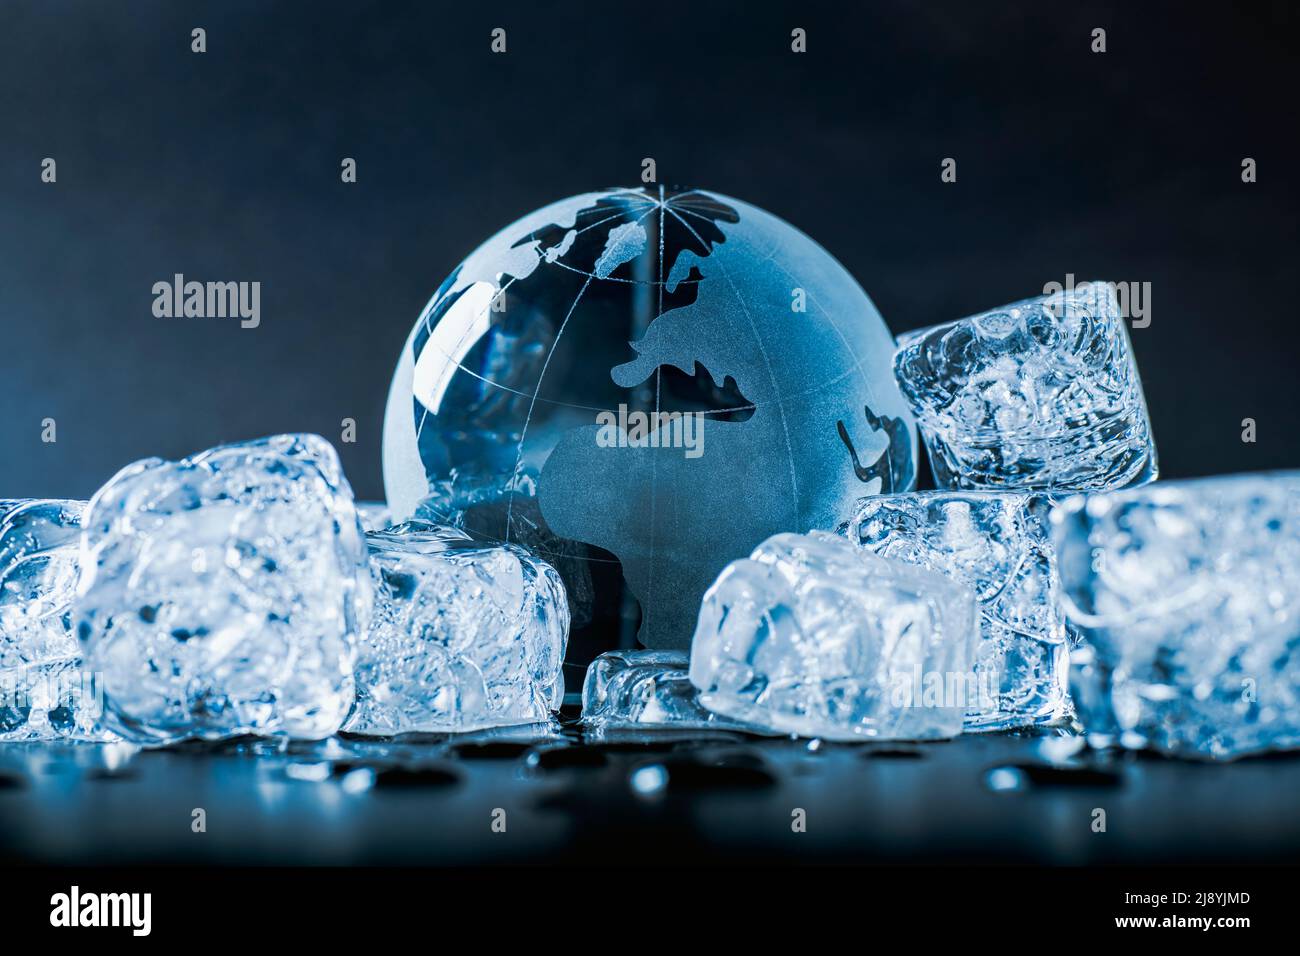 El globo está rodeado de cubitos de hielo que simbolizan la nueva era geológica o política del hielo Foto de stock